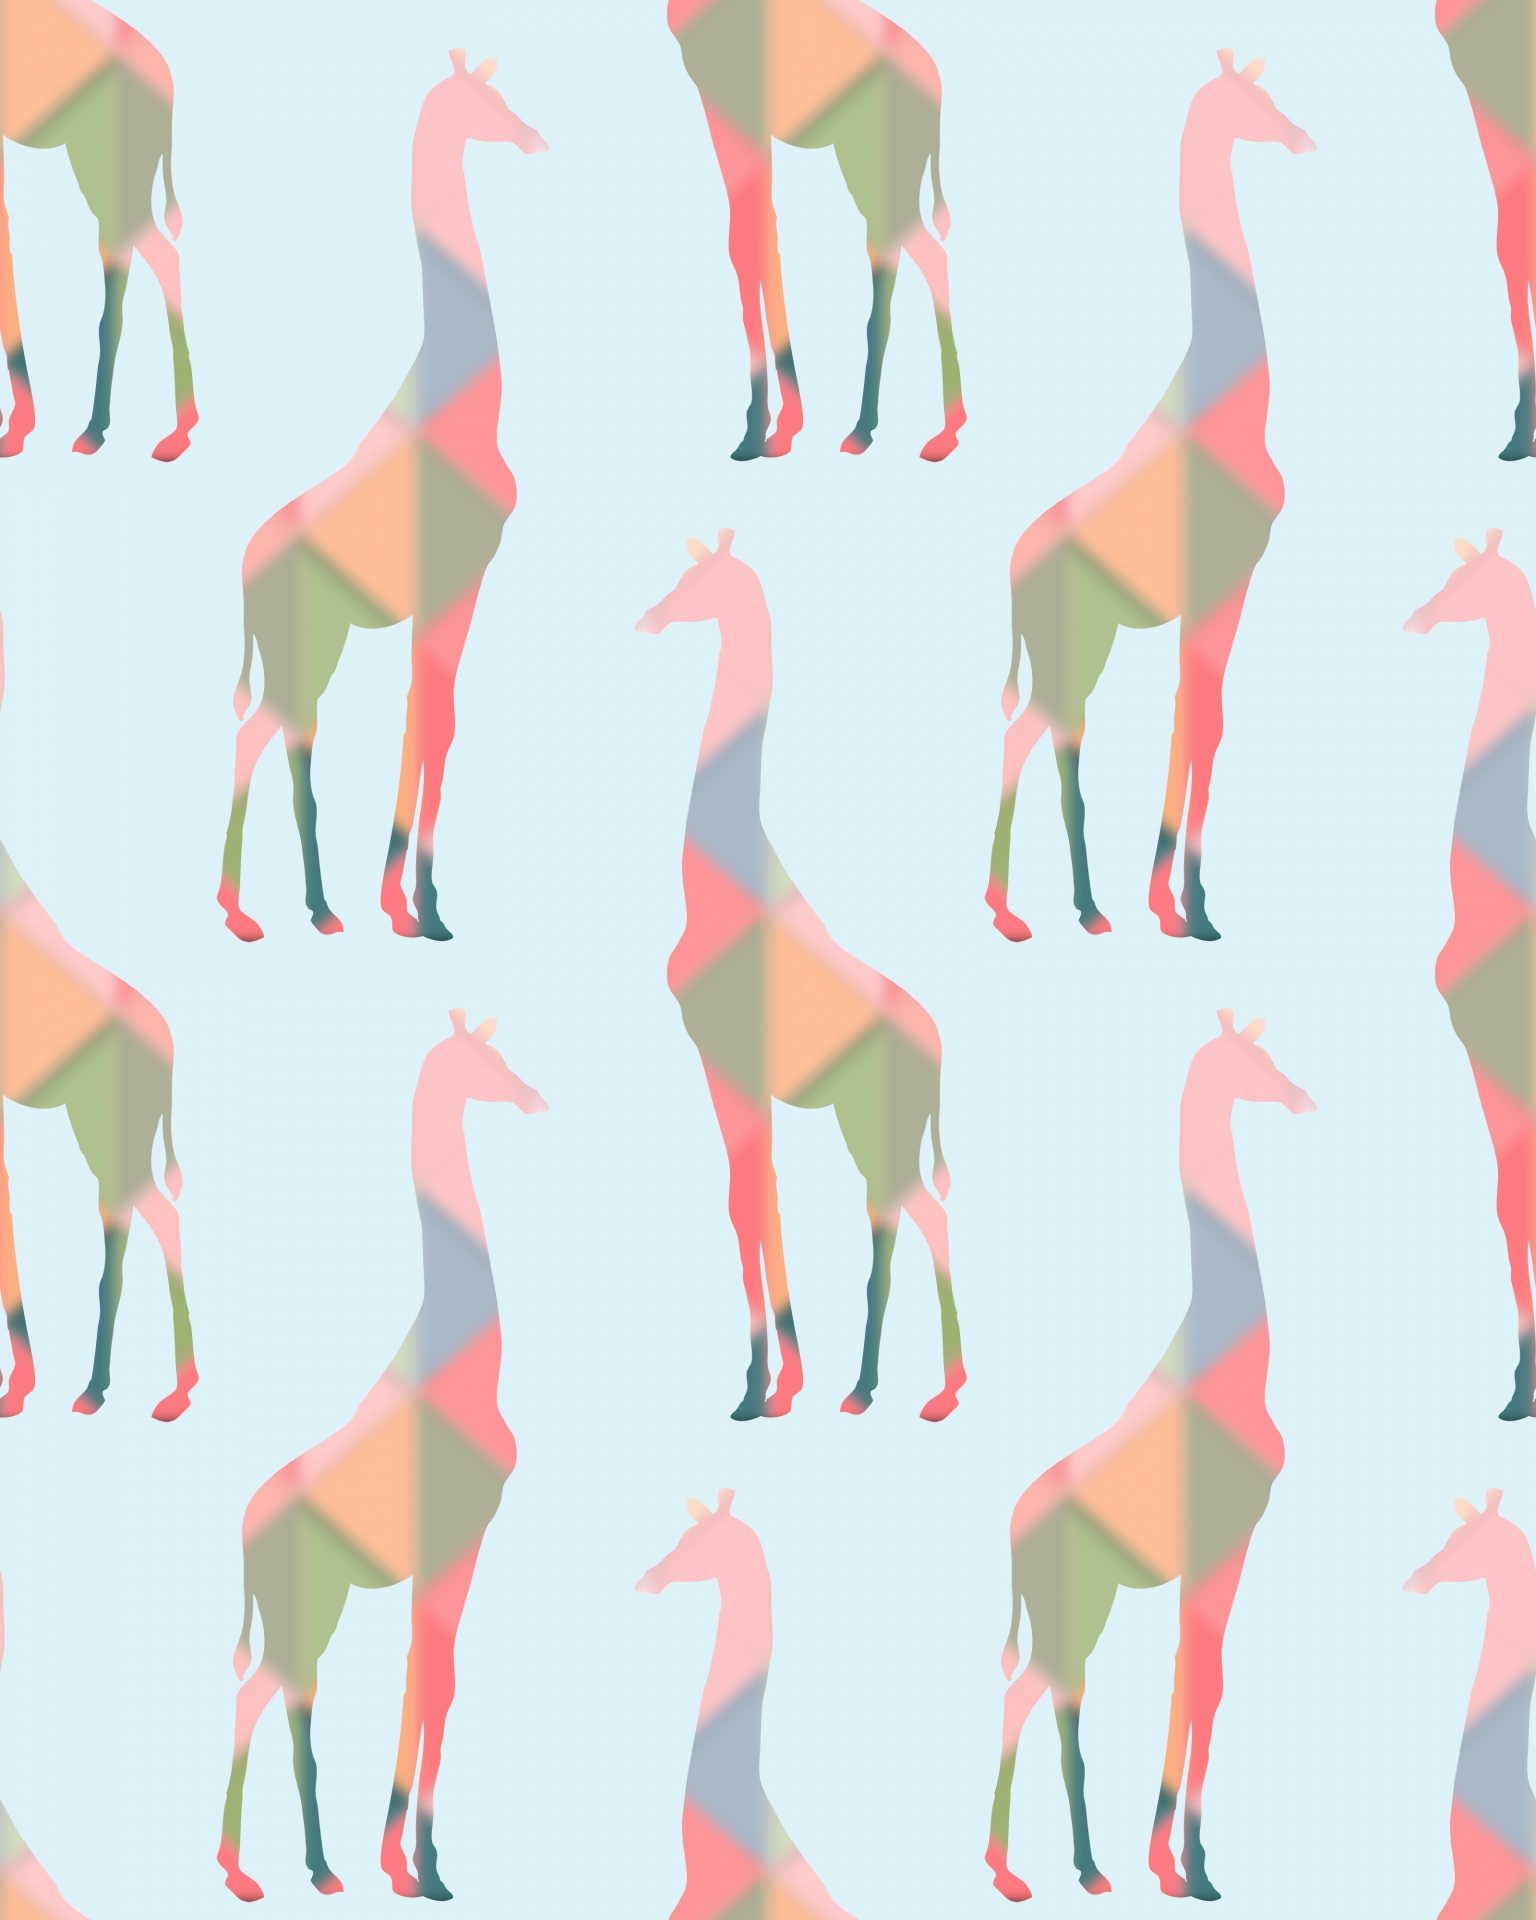 长颈鹿五颜六色的墙纸样式